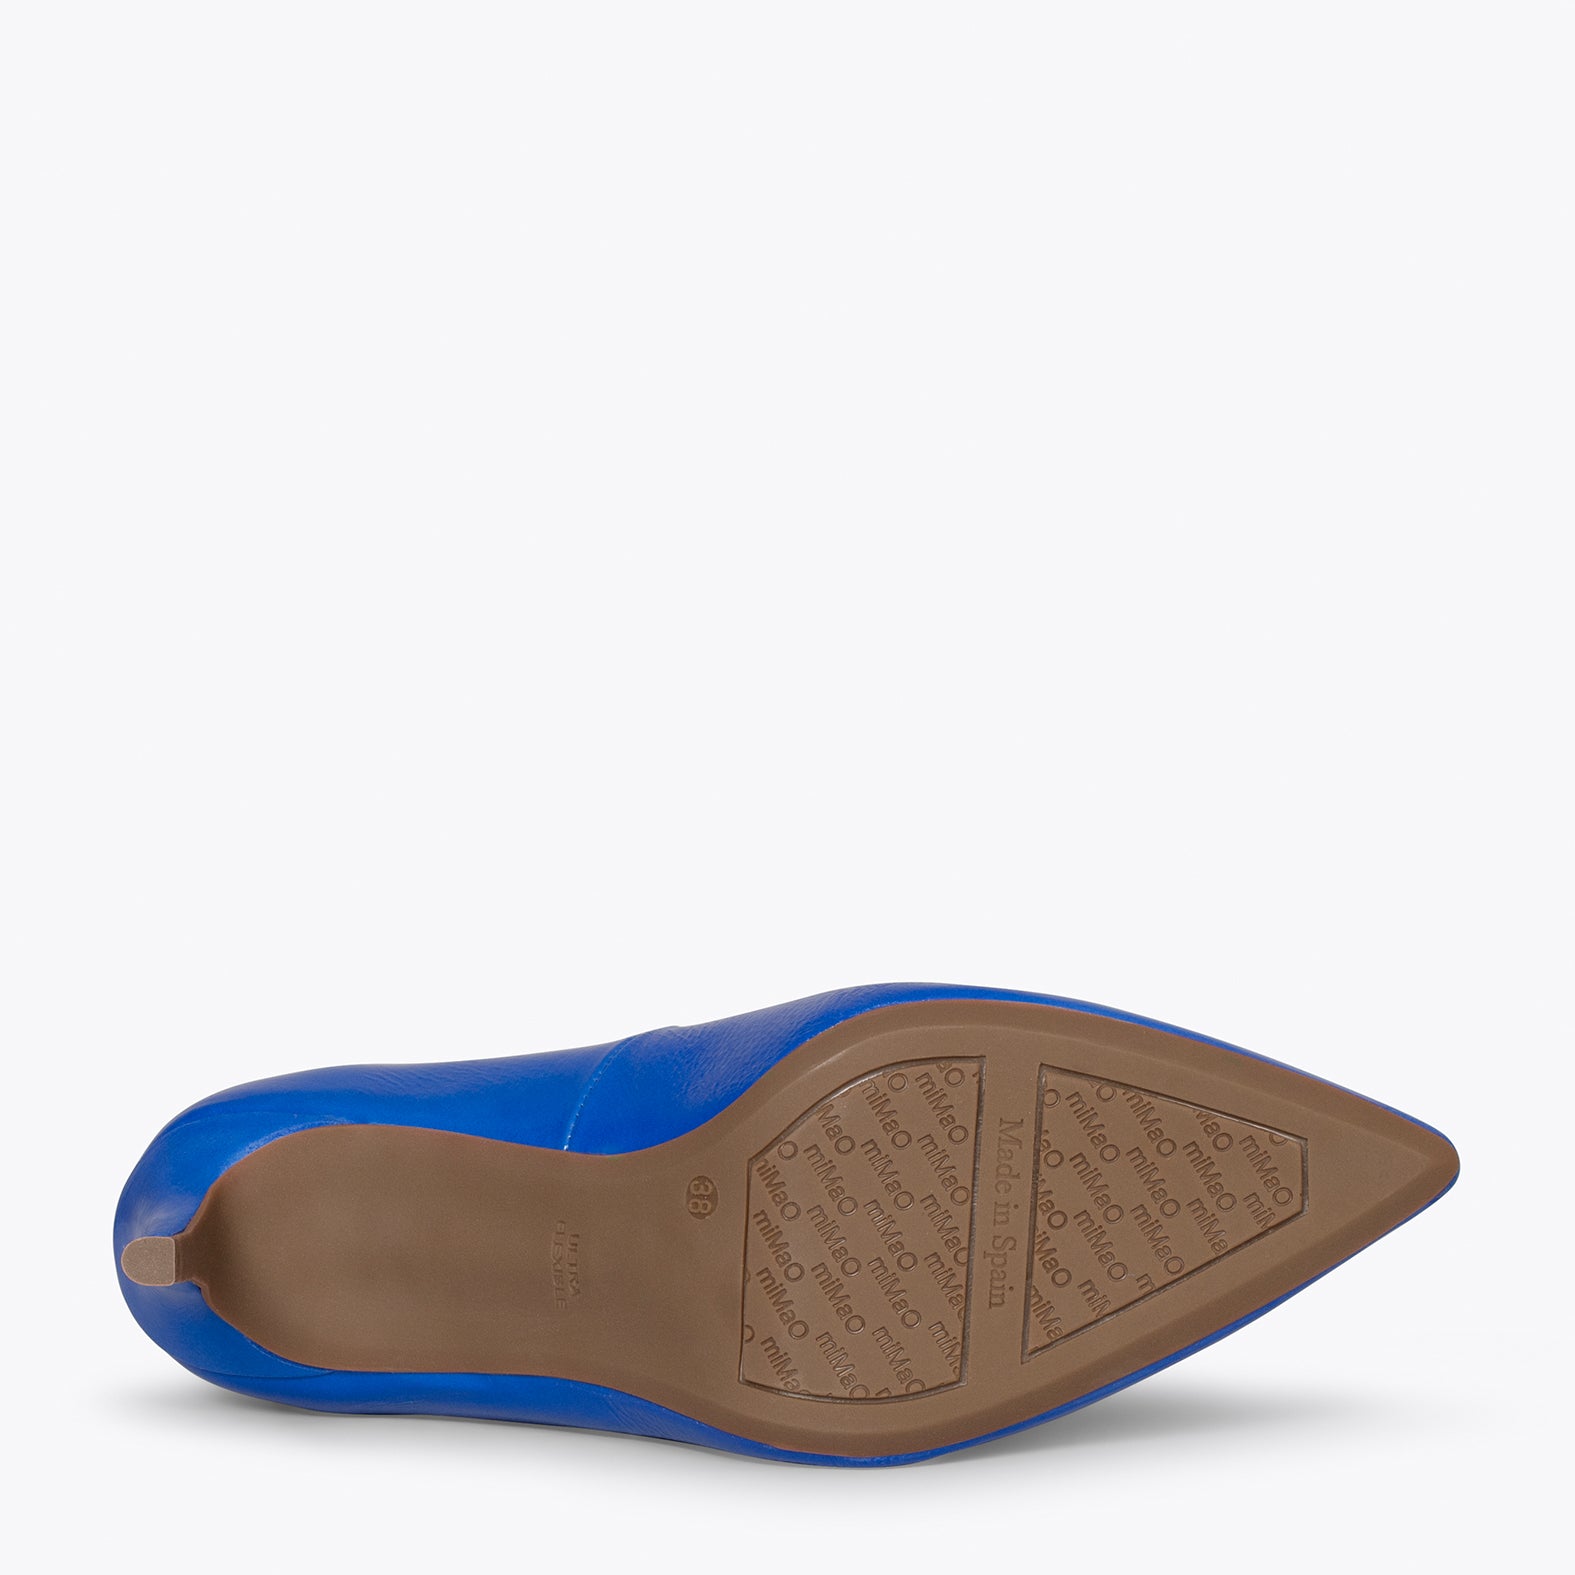 STILETTO - Zapatos de charol AZUL con tacón de aguja